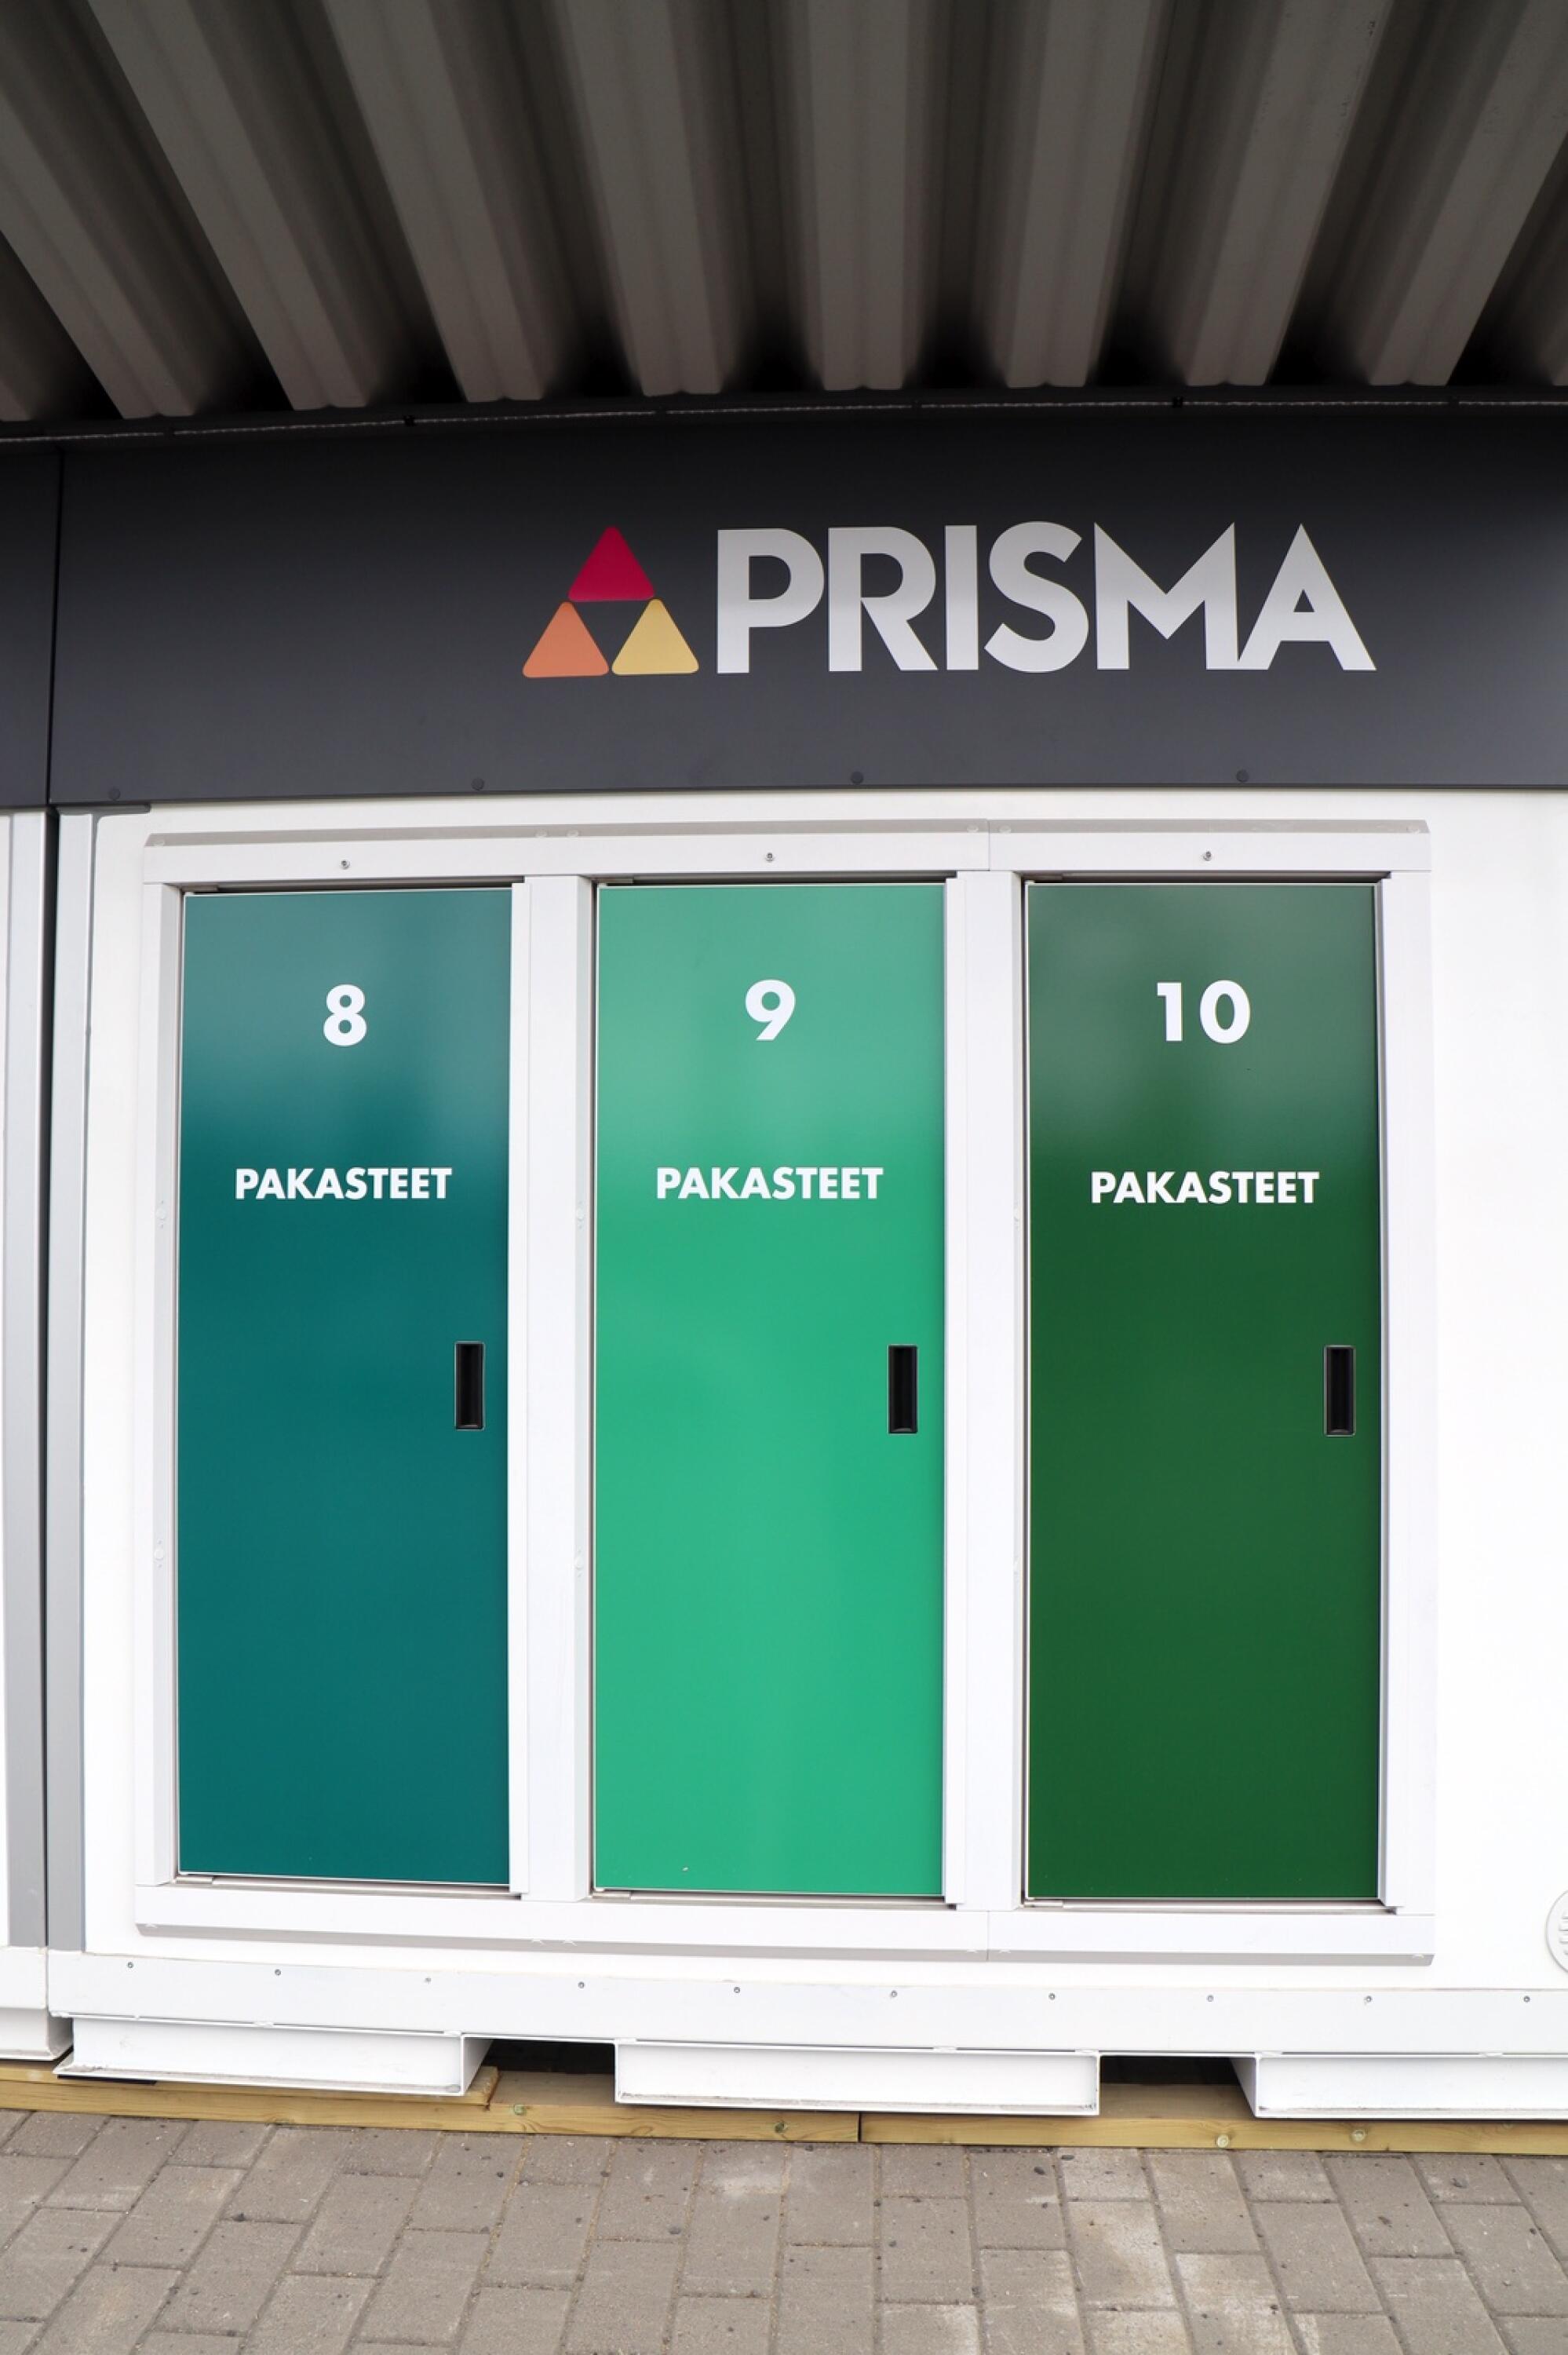 Tilaa verkosta ja hae noutopisteestä – Prisma laajentaa palveluaan  Torniossa | Kotikulmilta